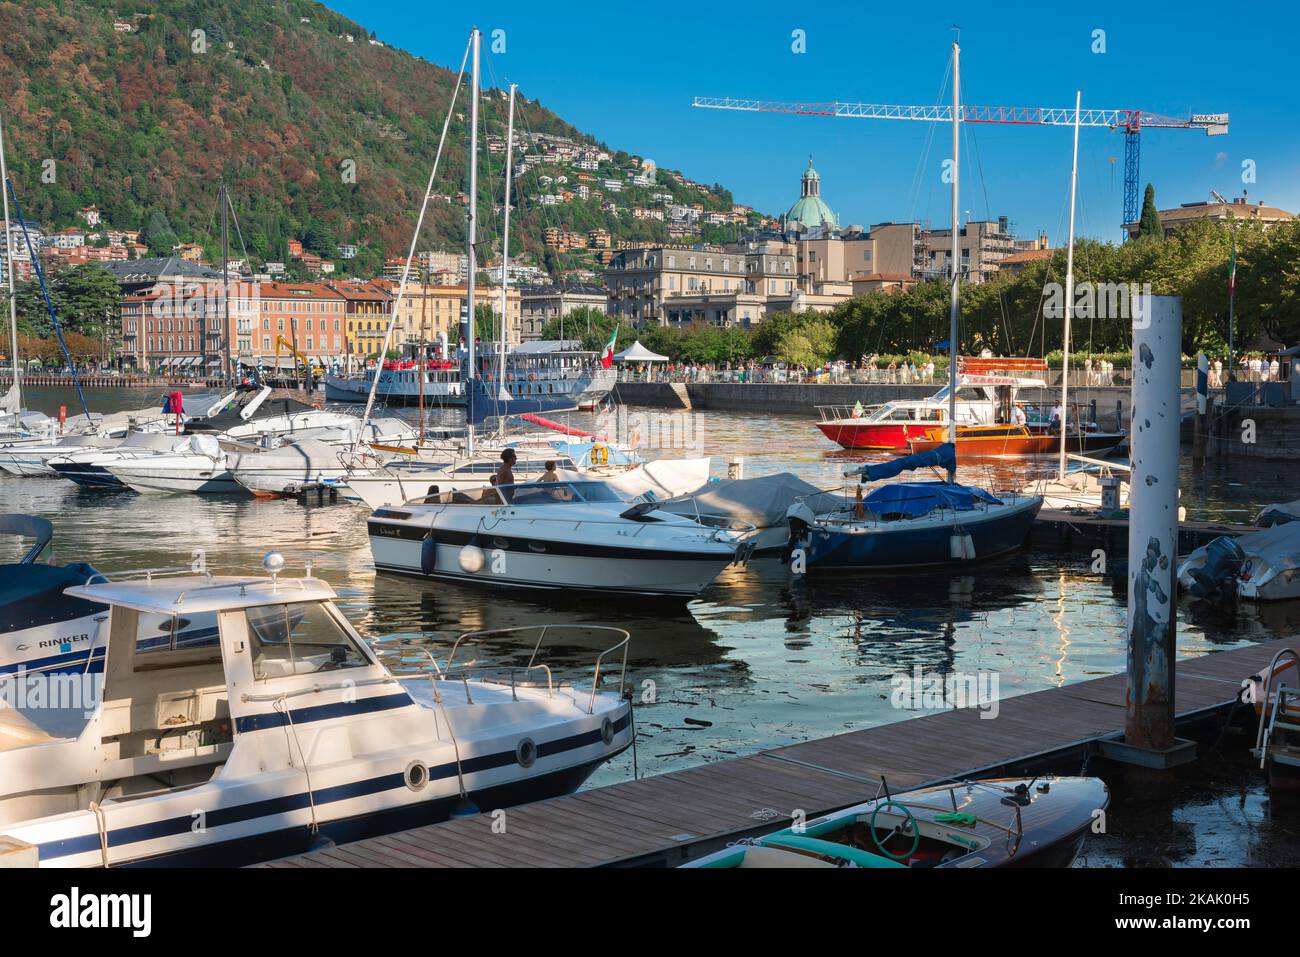 Puerto deportivo de la ciudad de Como, vista en verano de los barcos de ocio amarrados en el puerto deportivo de la ciudad de Como, Lago Como, Lombardía, Italia Foto de stock